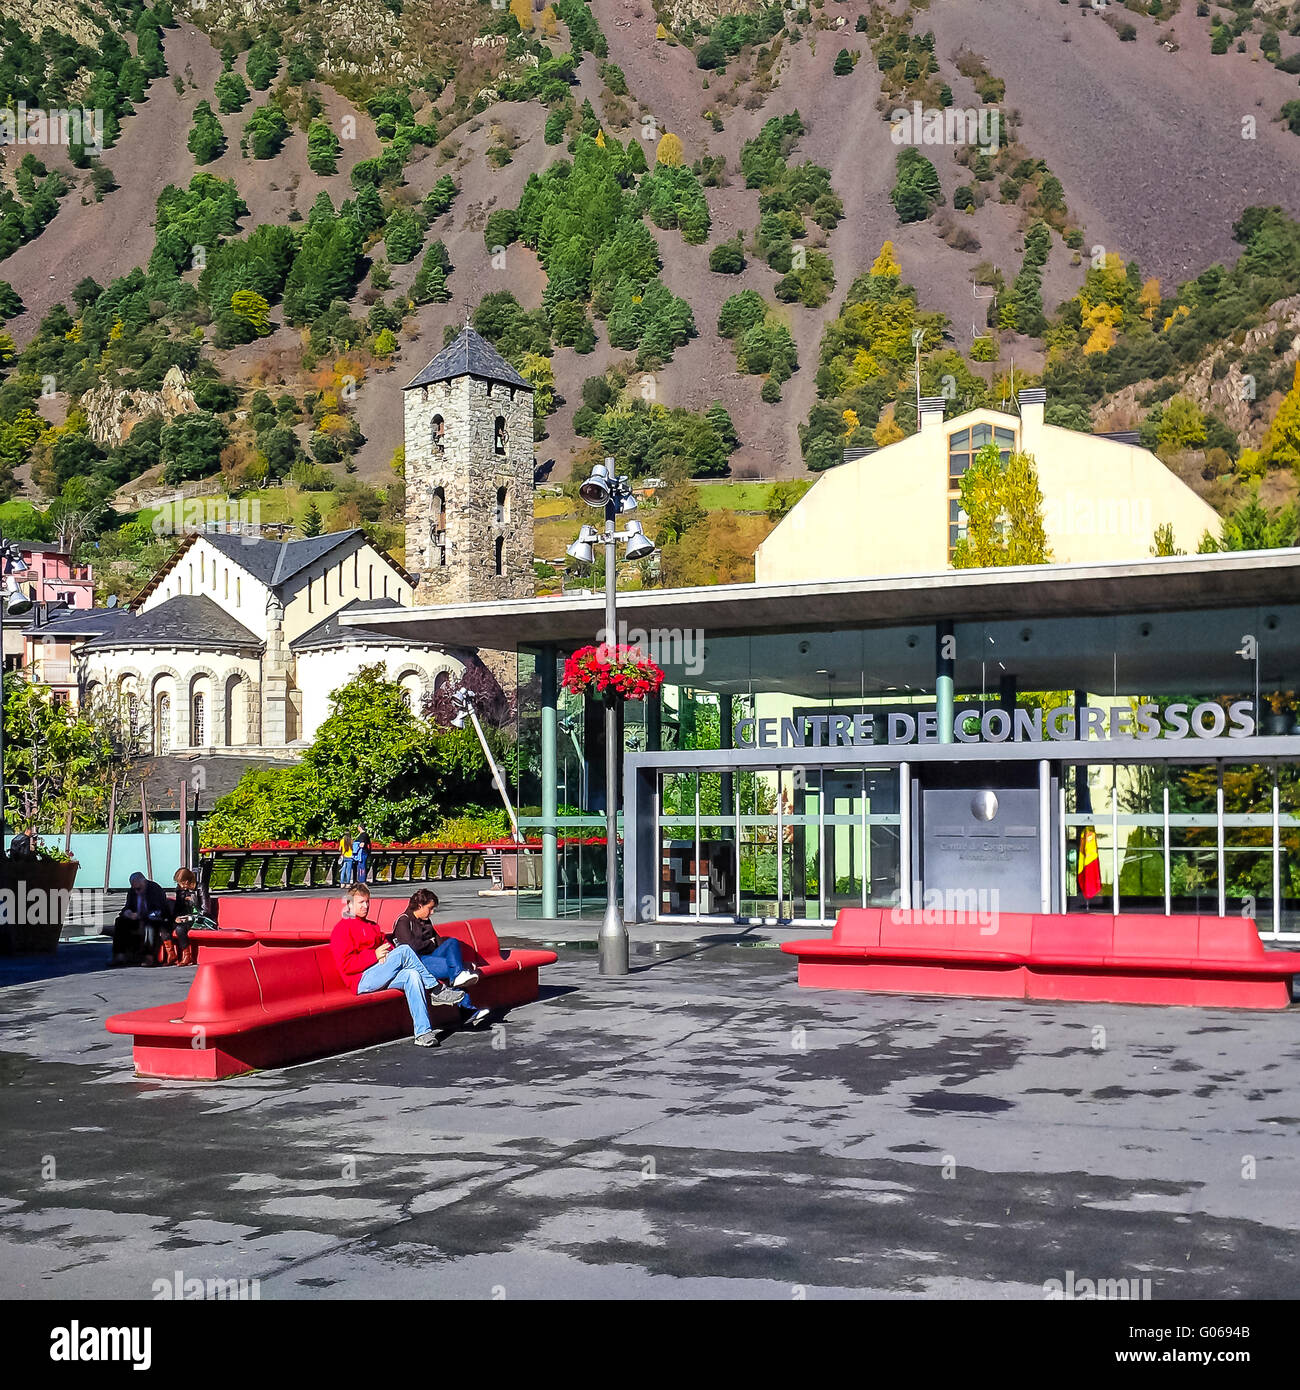 Centro de Congressos. Andorra la Vella. Andorra Foto Stock